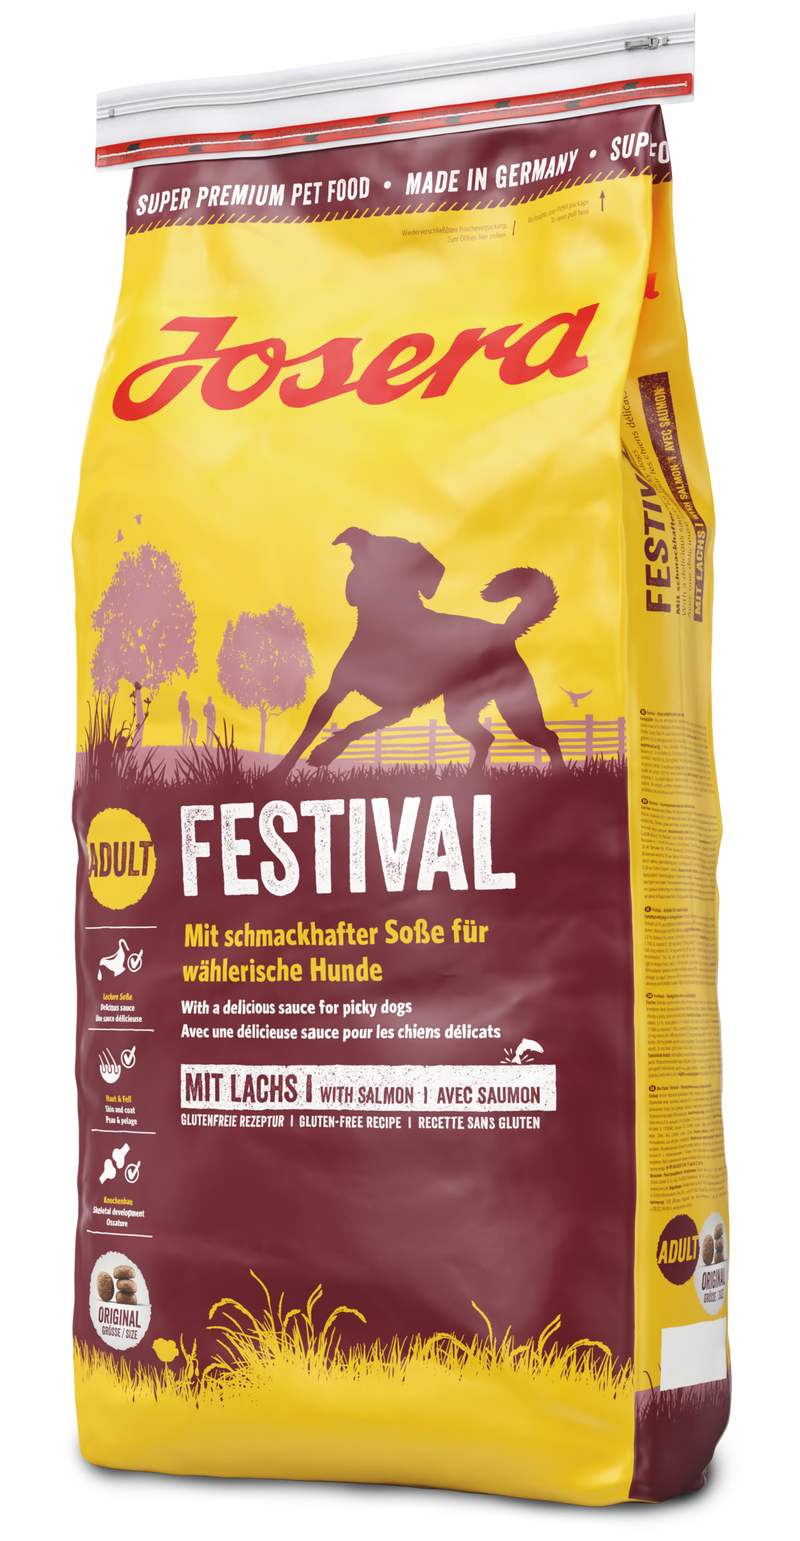 JOSERA Trockenfutter FESTIVAL für Hunde 900g